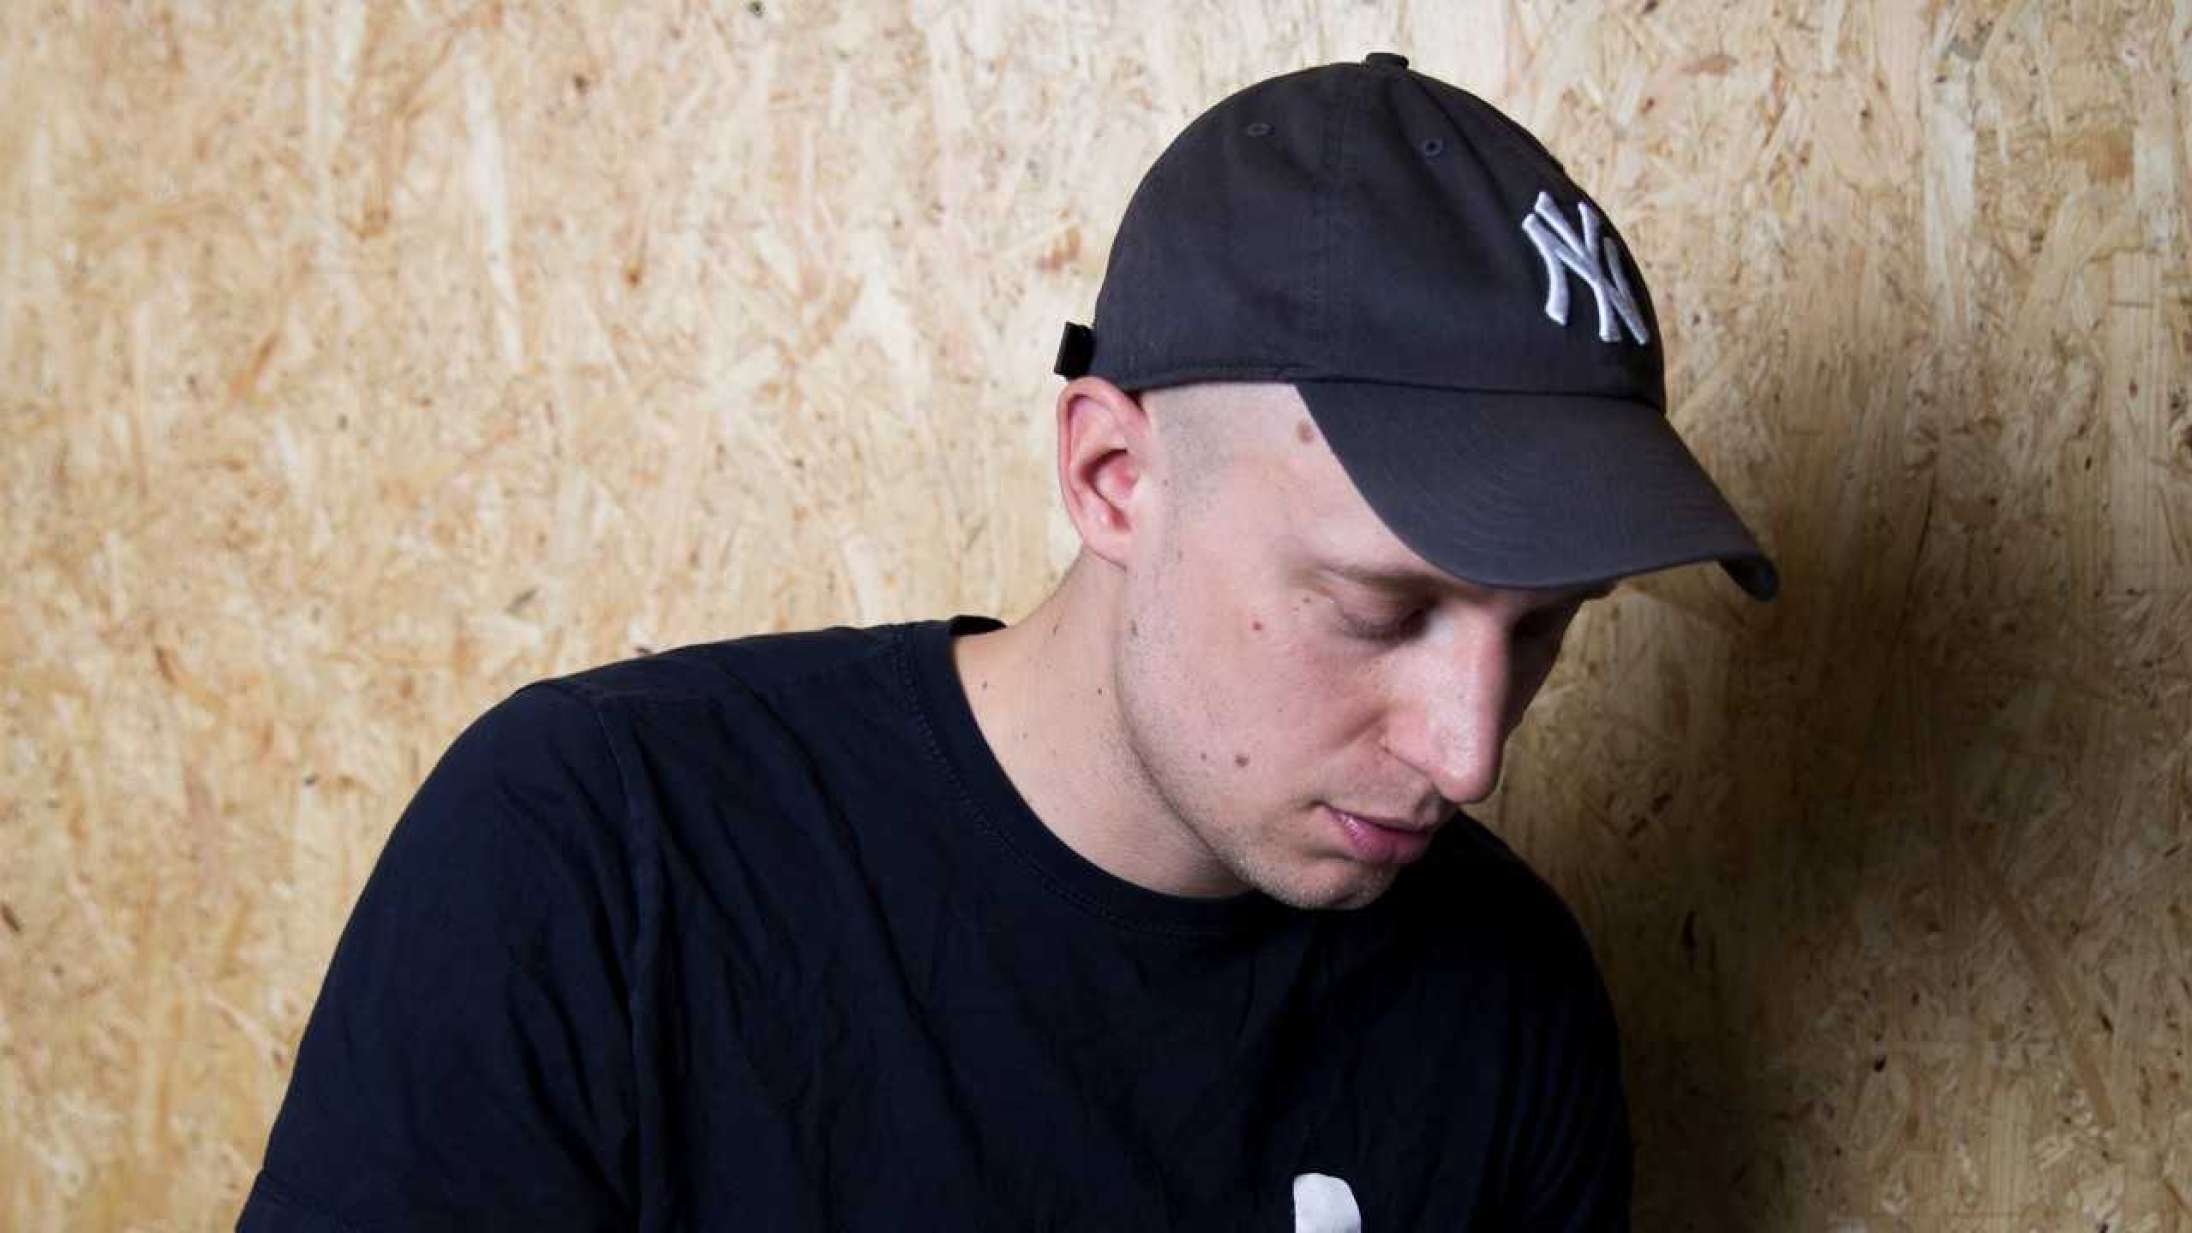 Pede B afslører tracklisten til ‘Over askeskyen 3’ – DJ Noize har produceret det hele